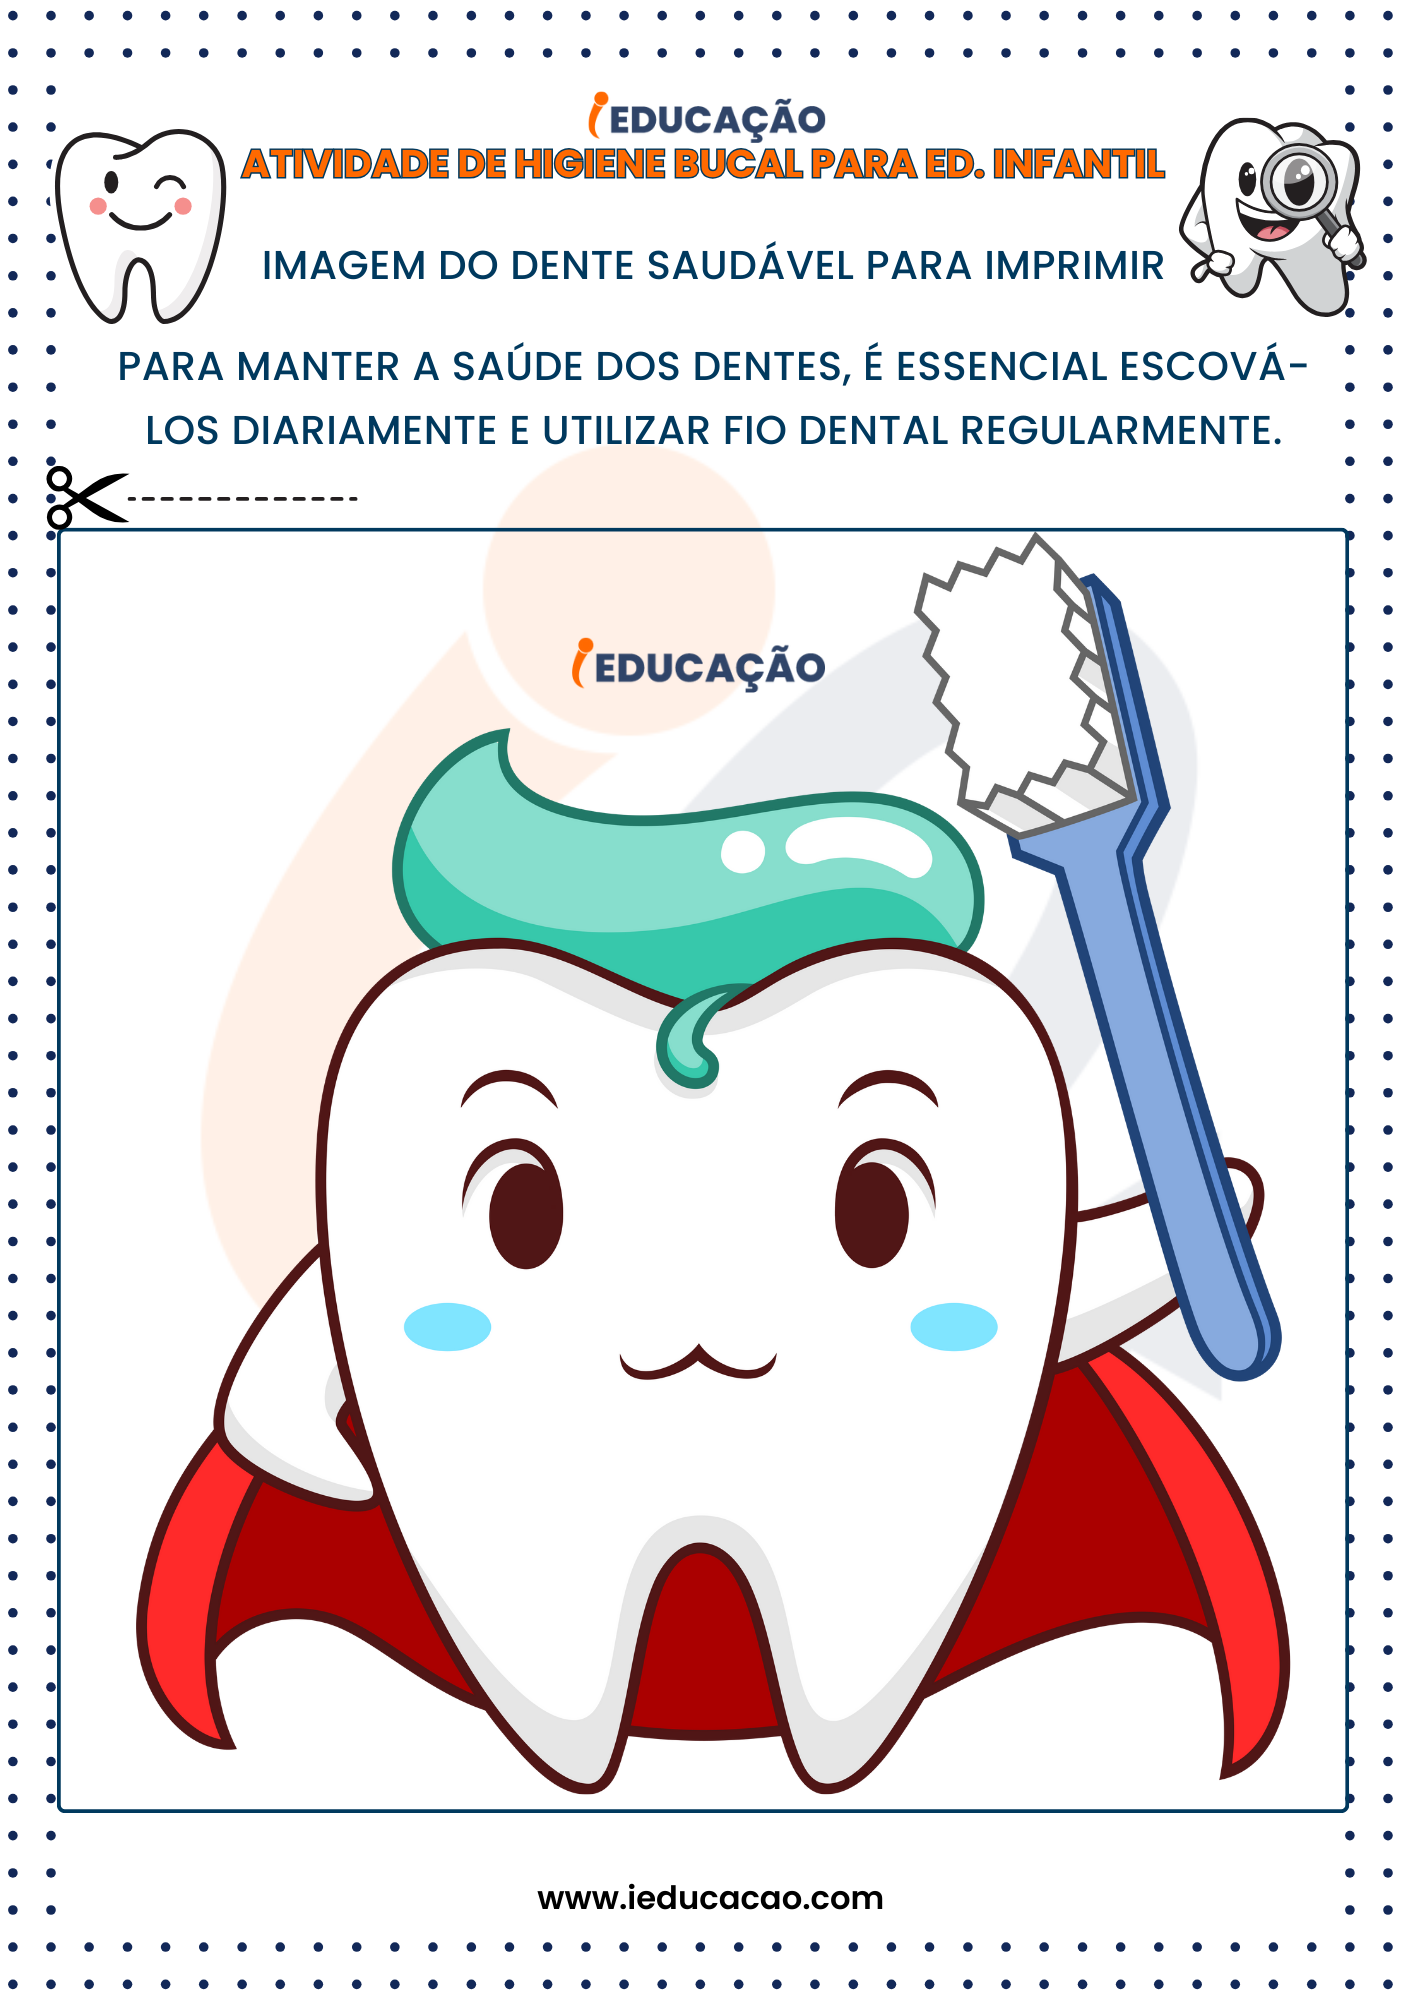 Atividades de Higiene Bucal para Educação Infantil imagem do dente saudável para imprimir